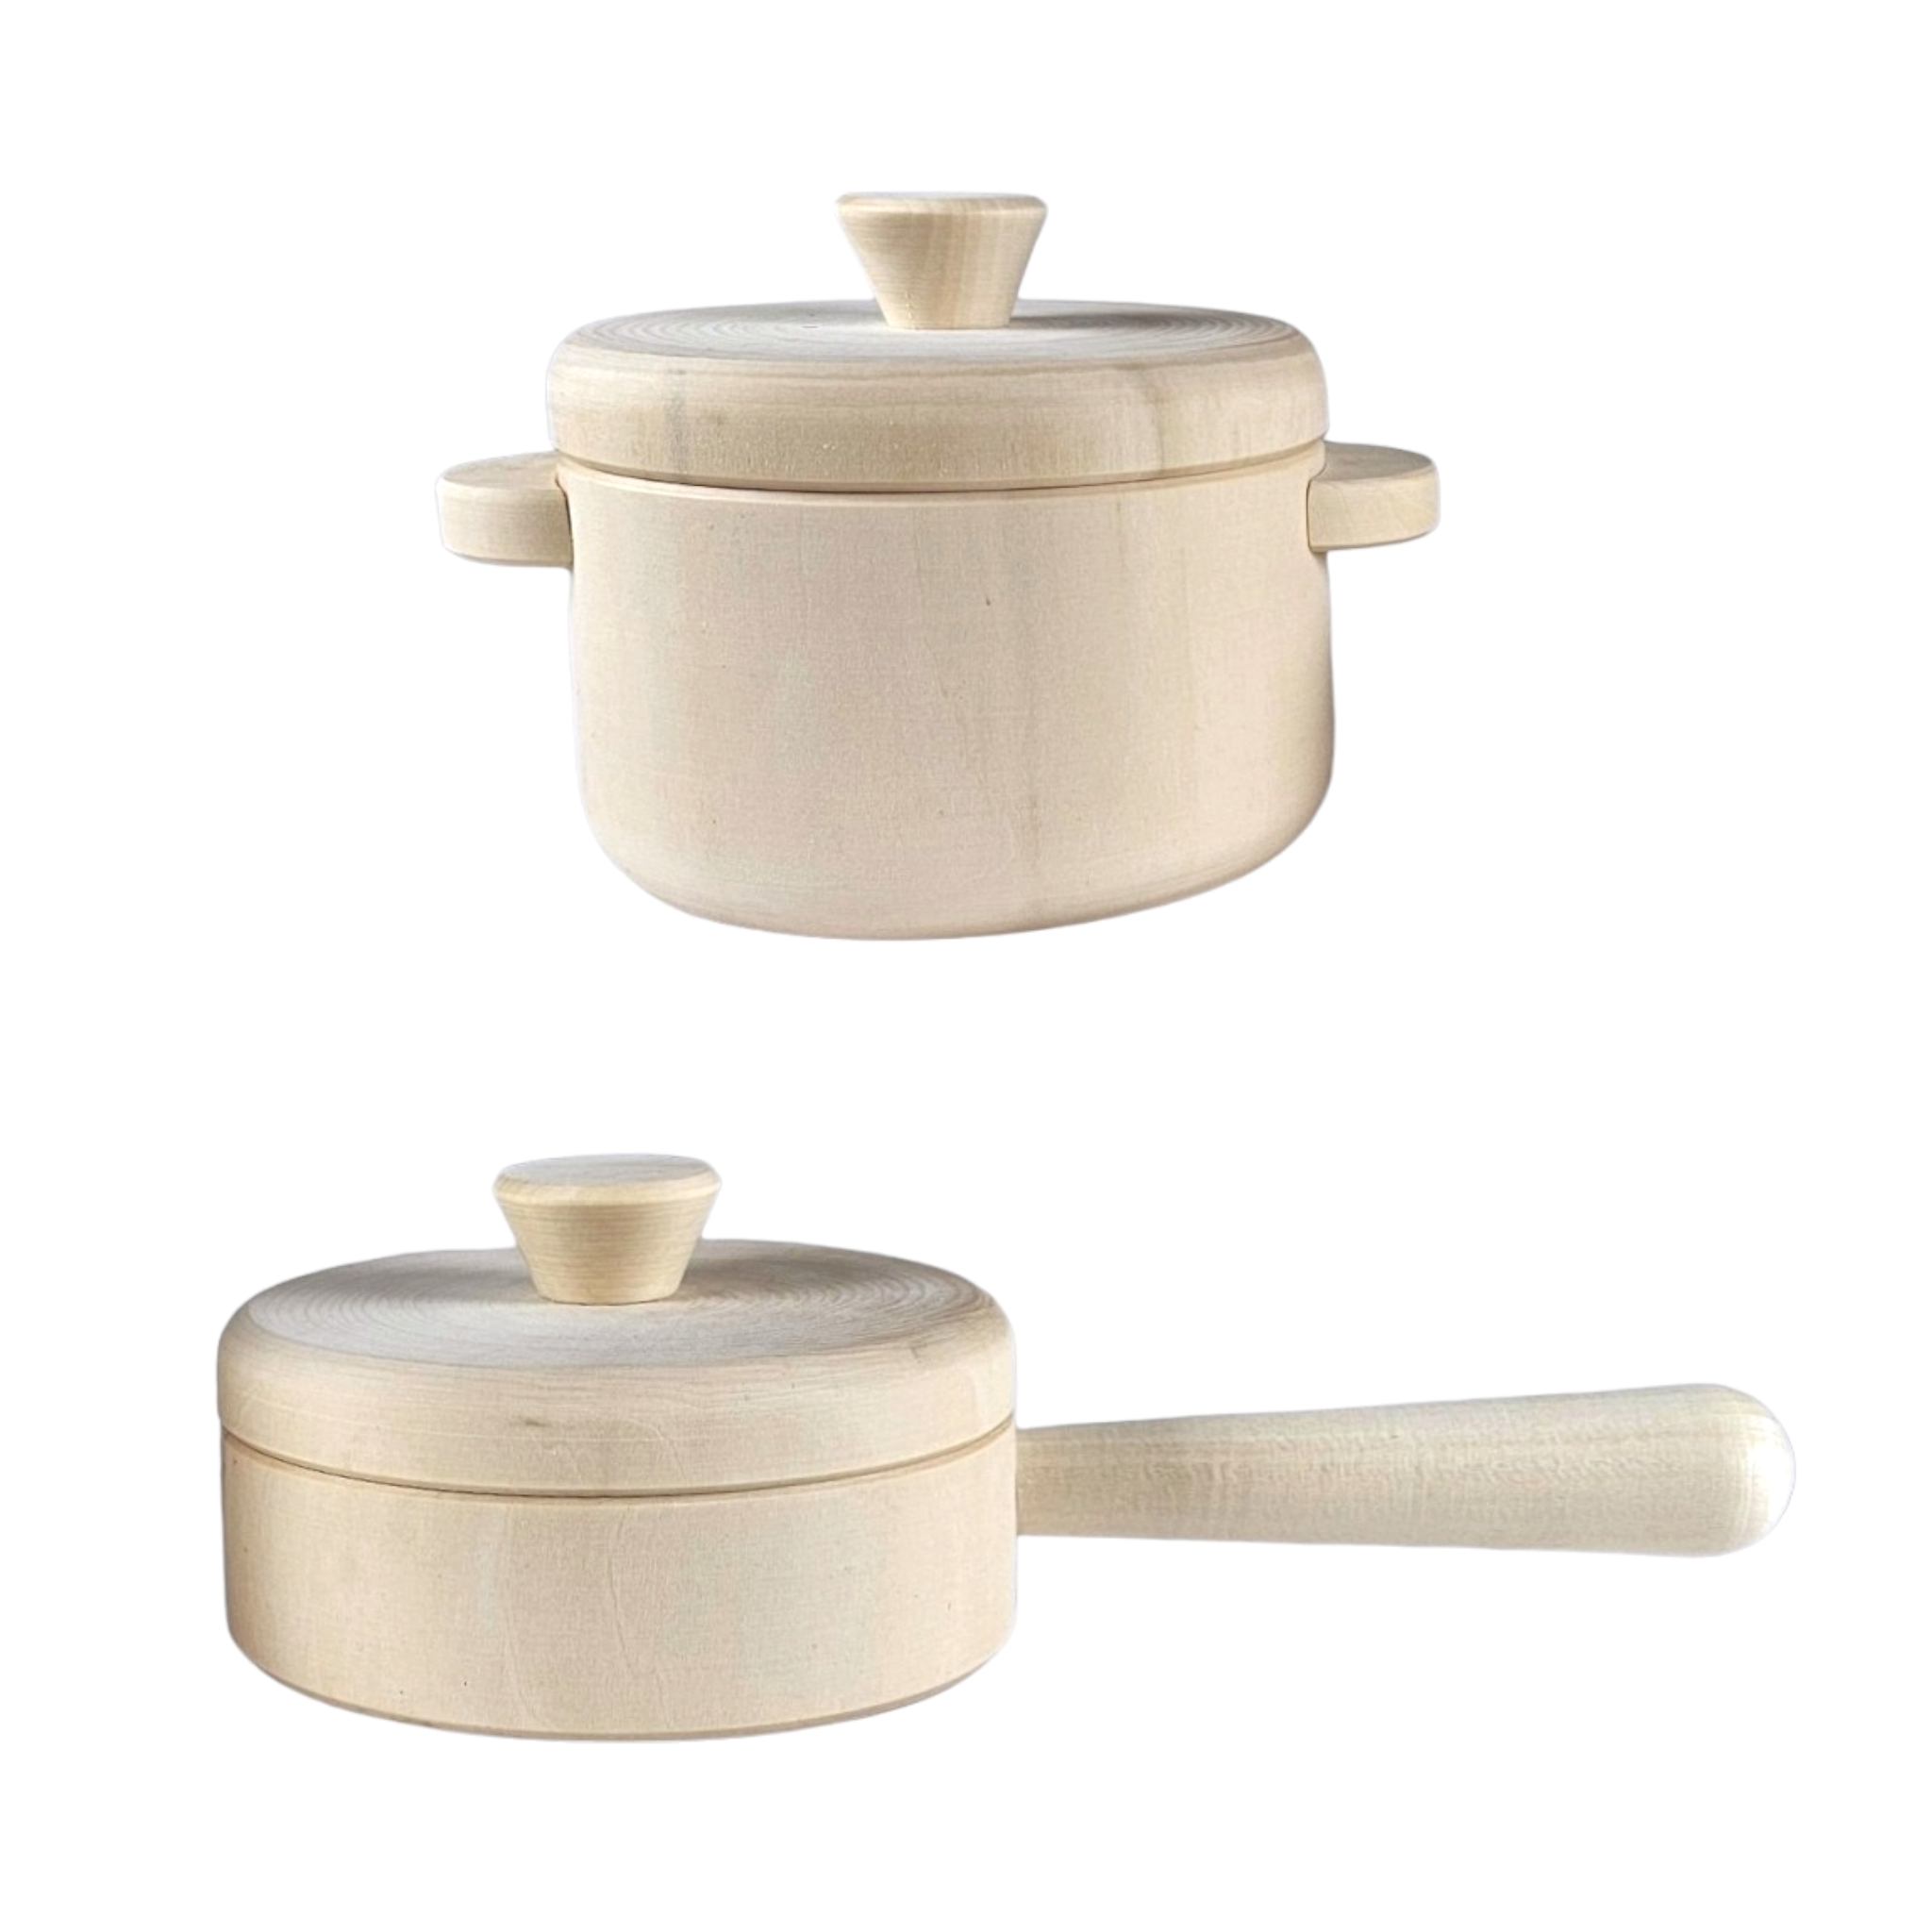 Pot and Pan Cookware (set or individual)